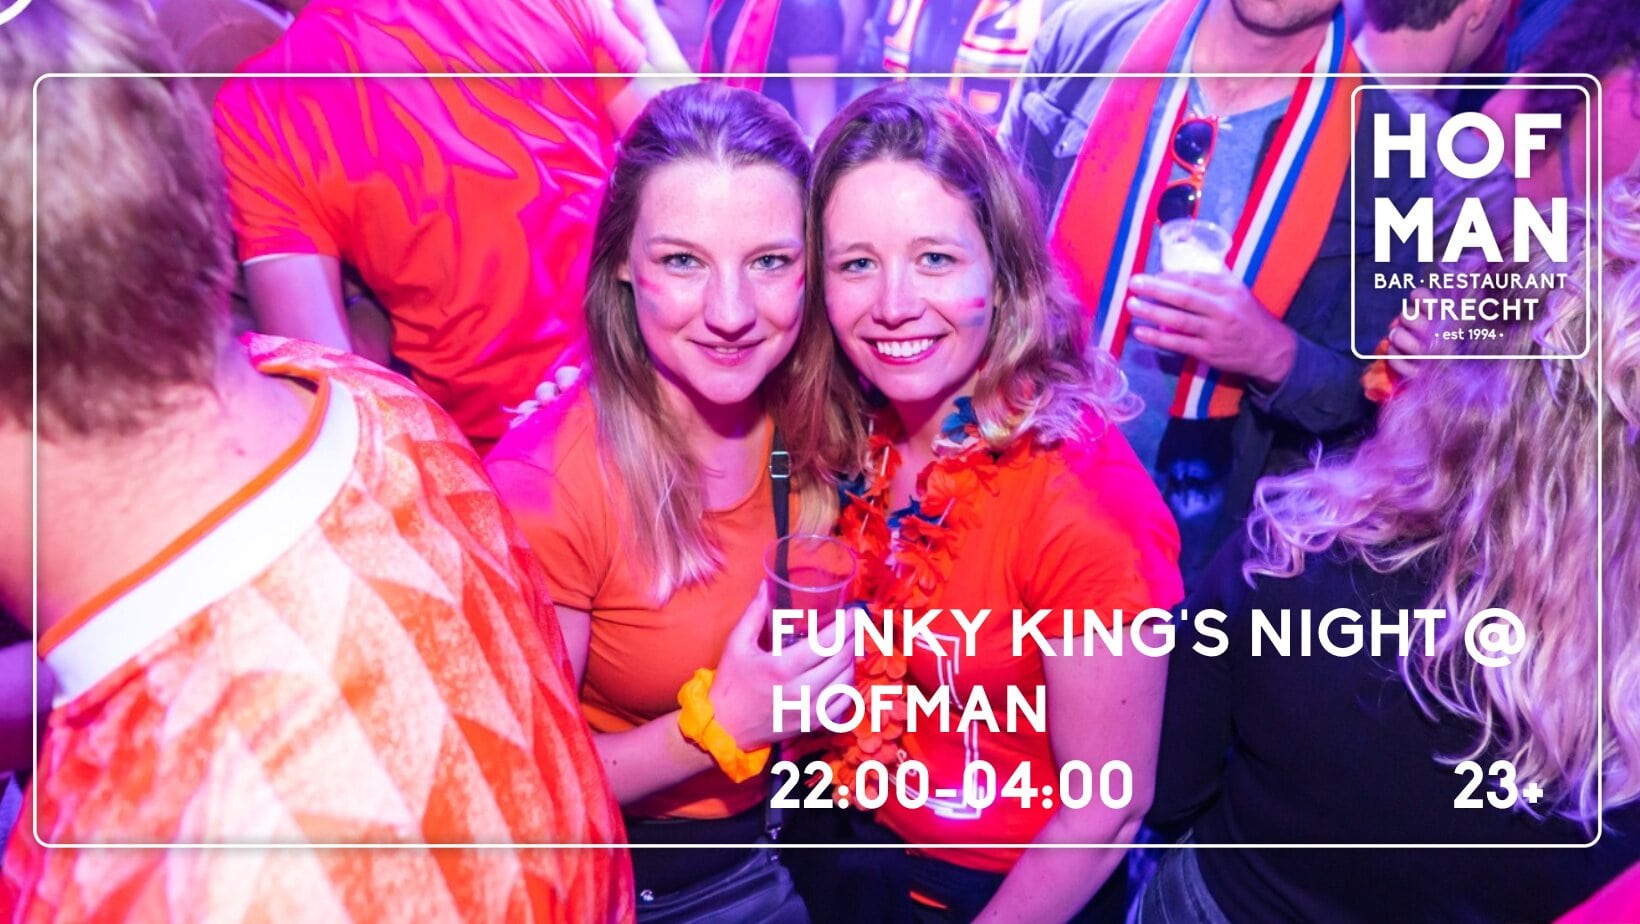 Ticket kopen voor evenement Hofman Koningsnacht 2024 (23+)